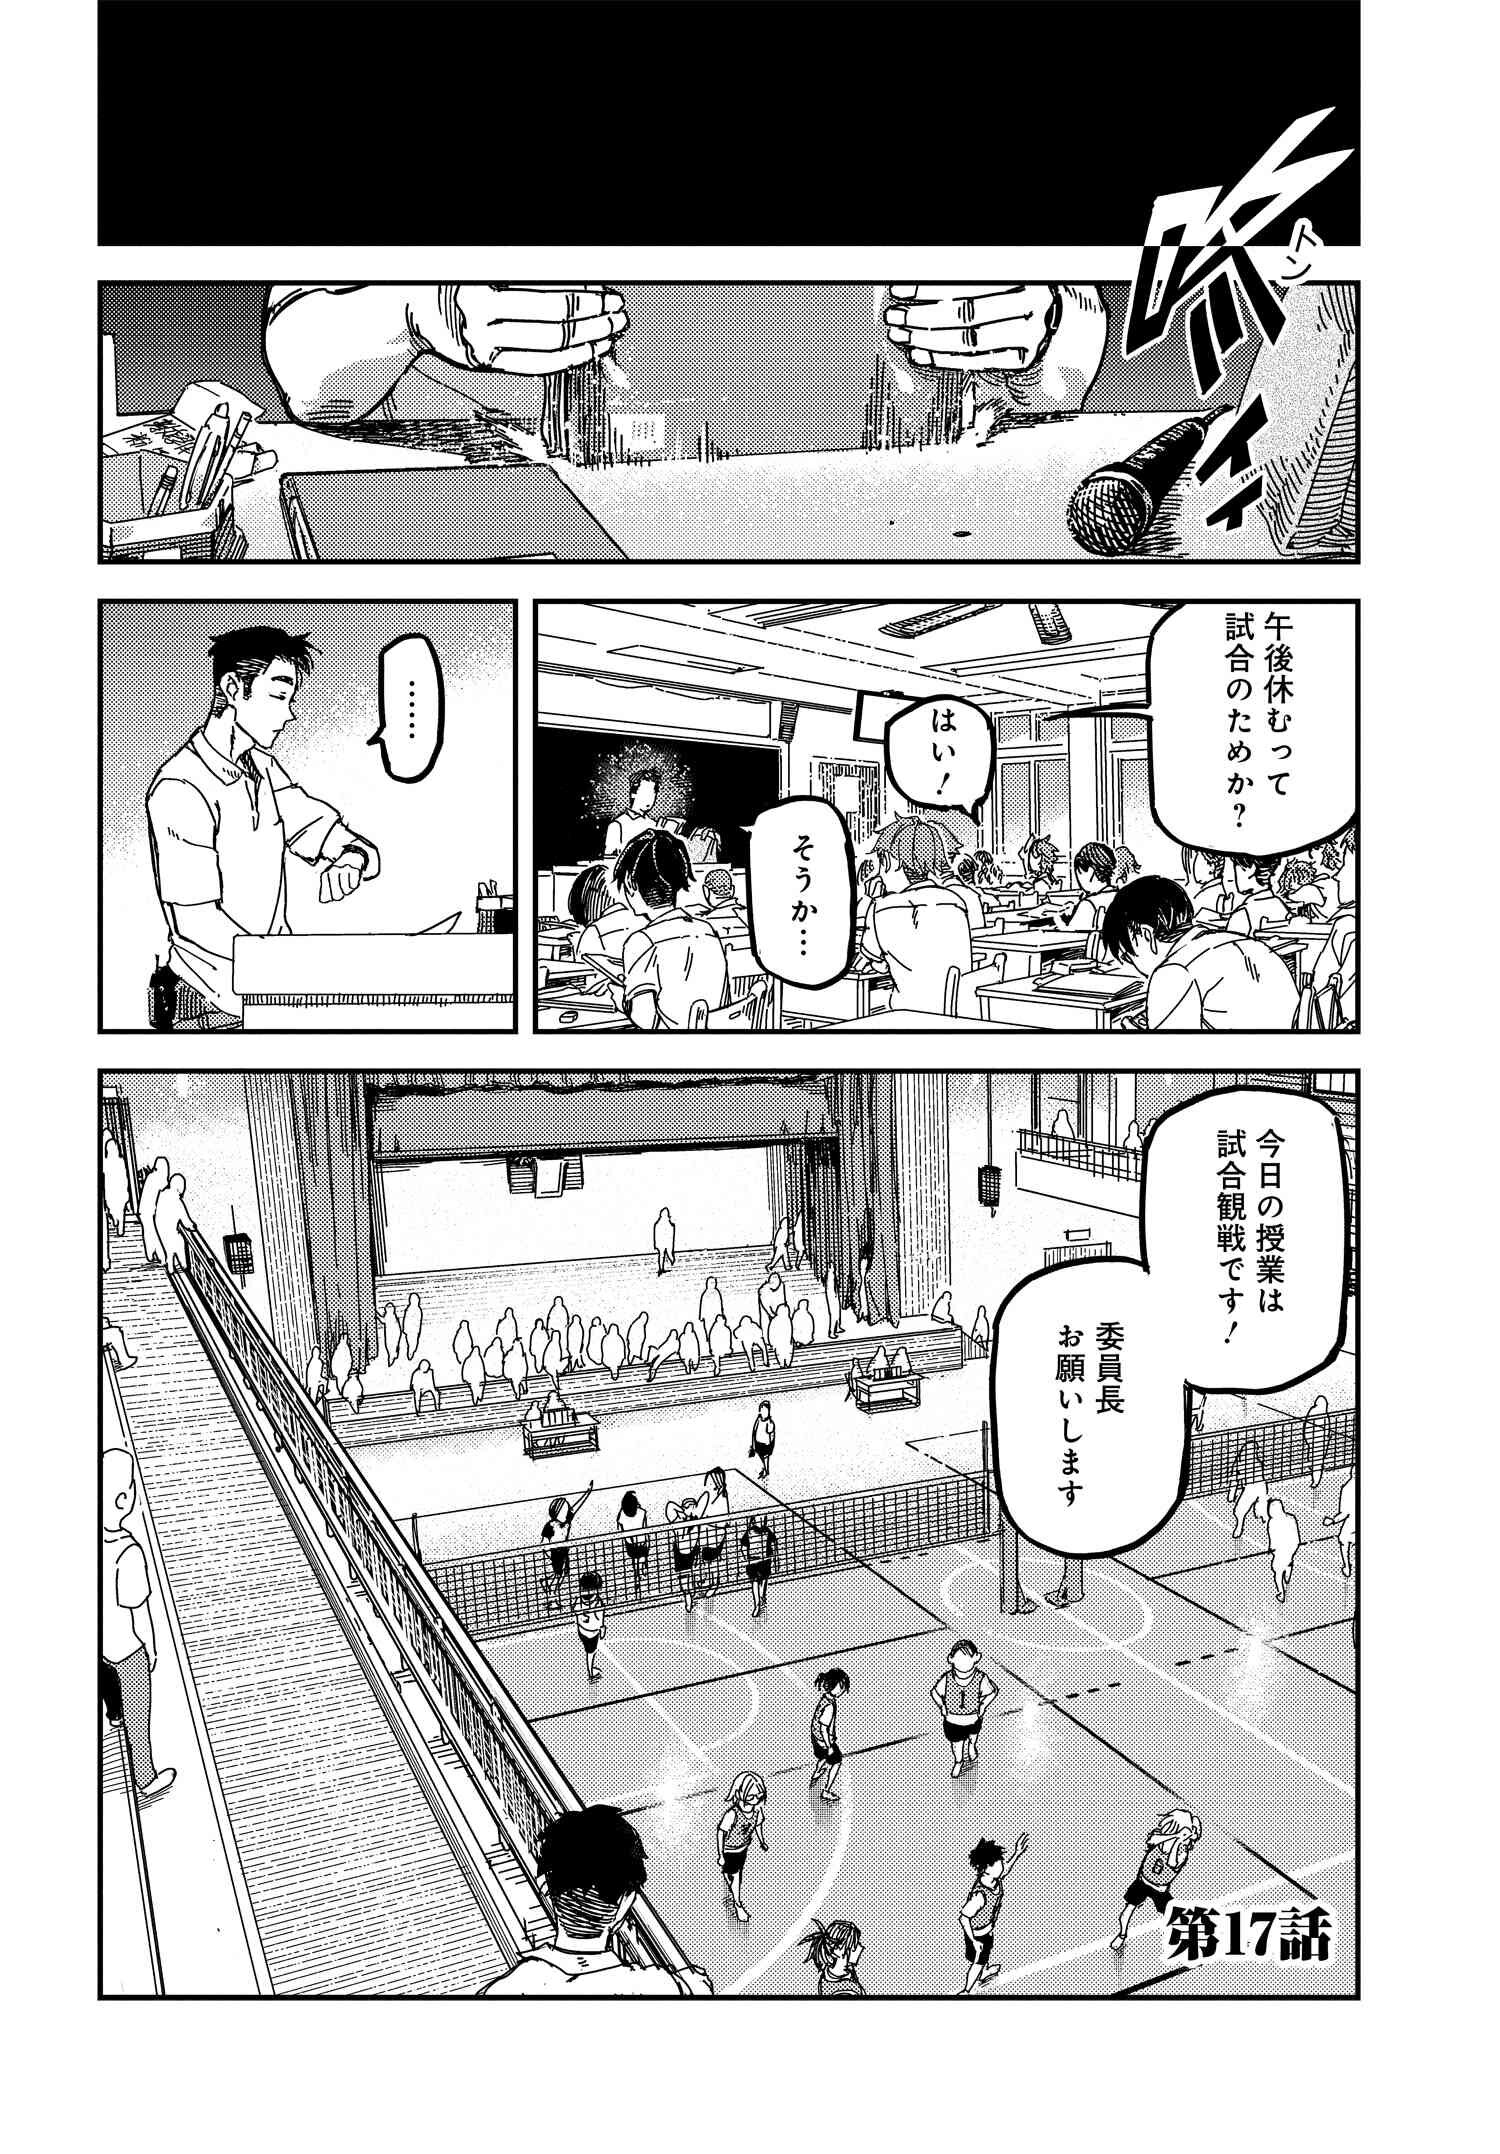 Boku no Koe o Kiite Hoshii!! - Chapter 17 - Page 2